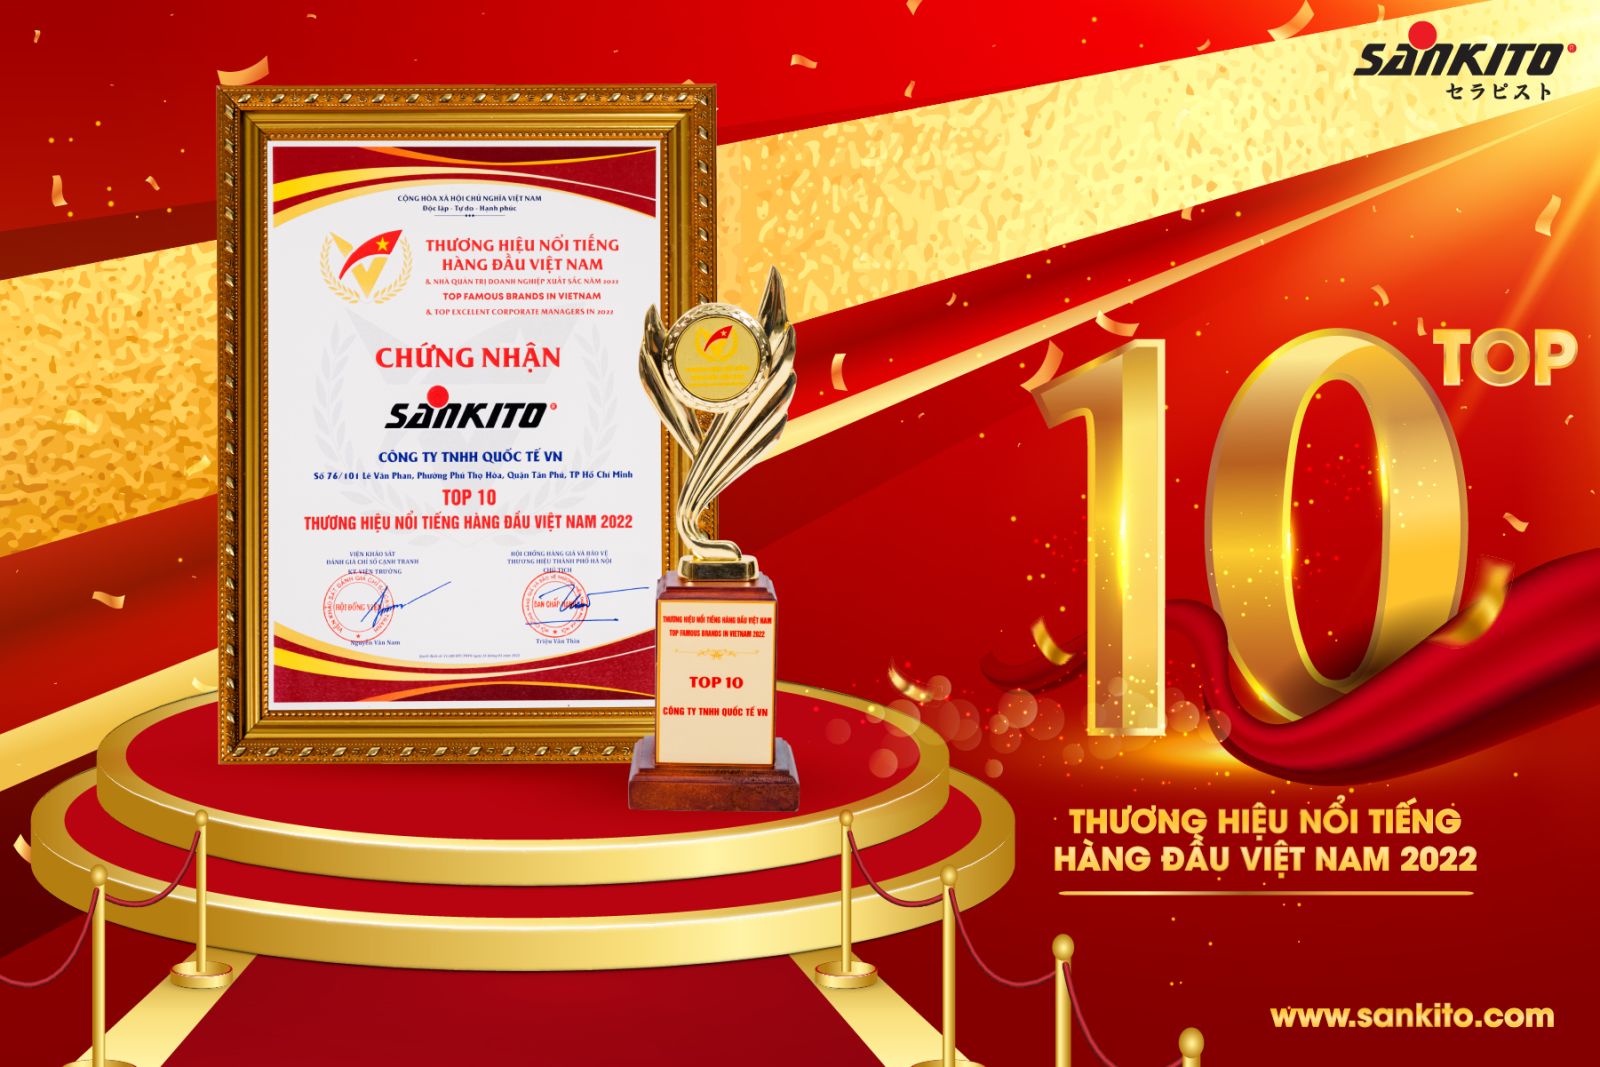 Sankito - Top 10 thương hiệu nổi tiếng hàng đầu Việt Nam